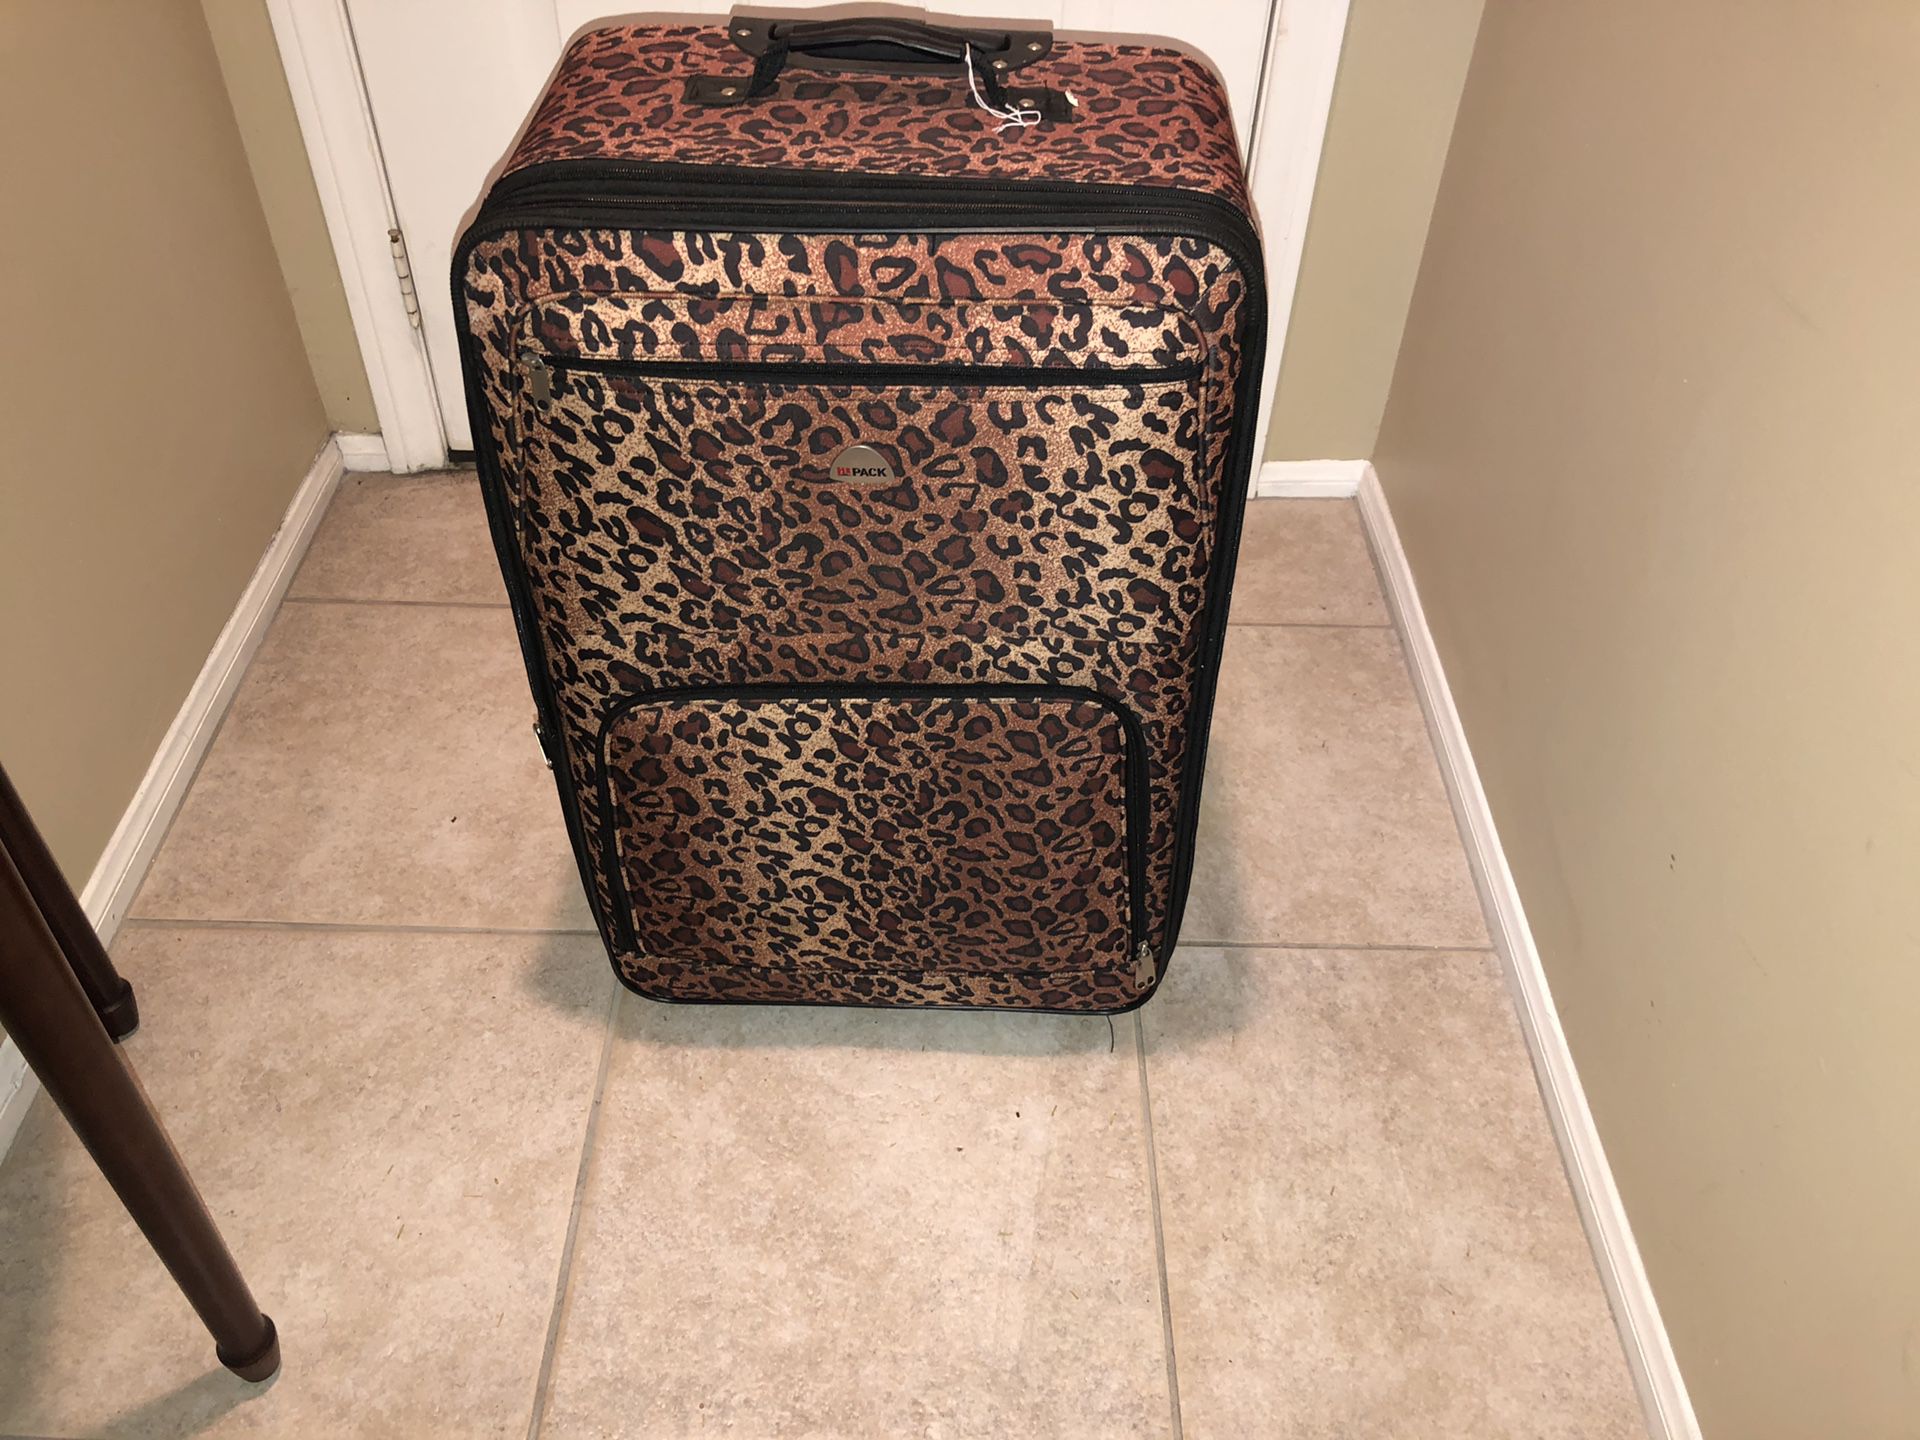 Leopard print suitcase